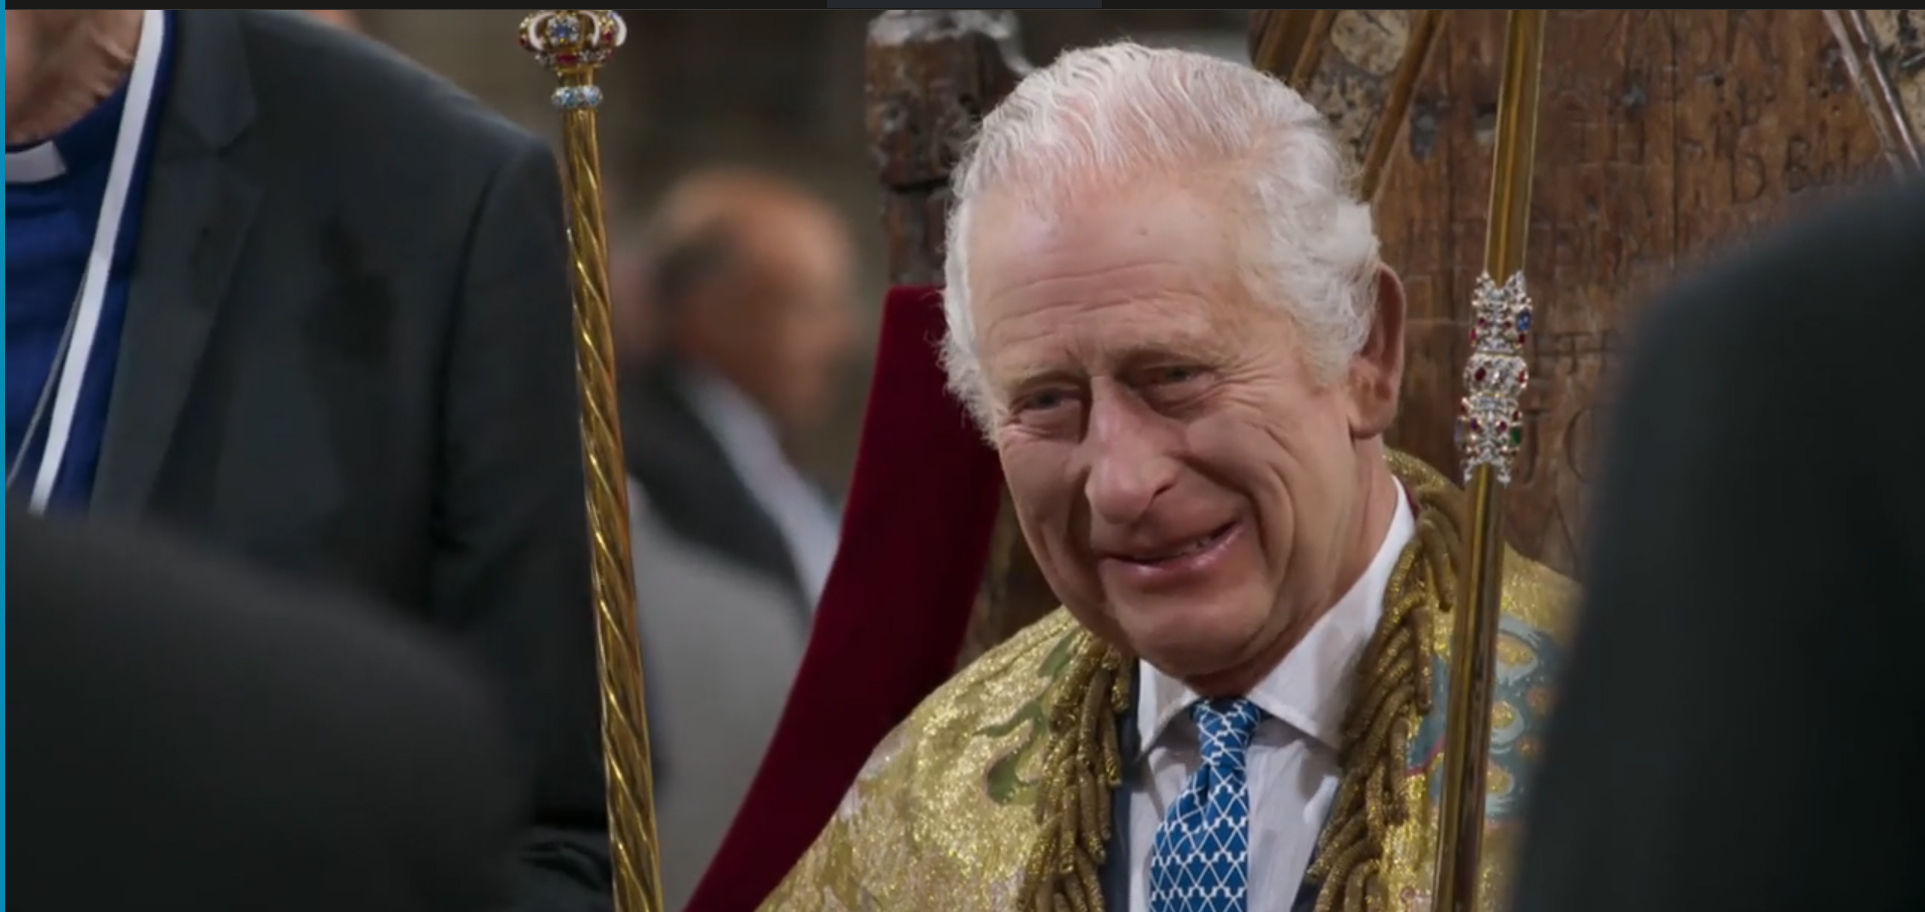 De nouvelles images montrent le roi souriant alors qu'il répète le couronnement